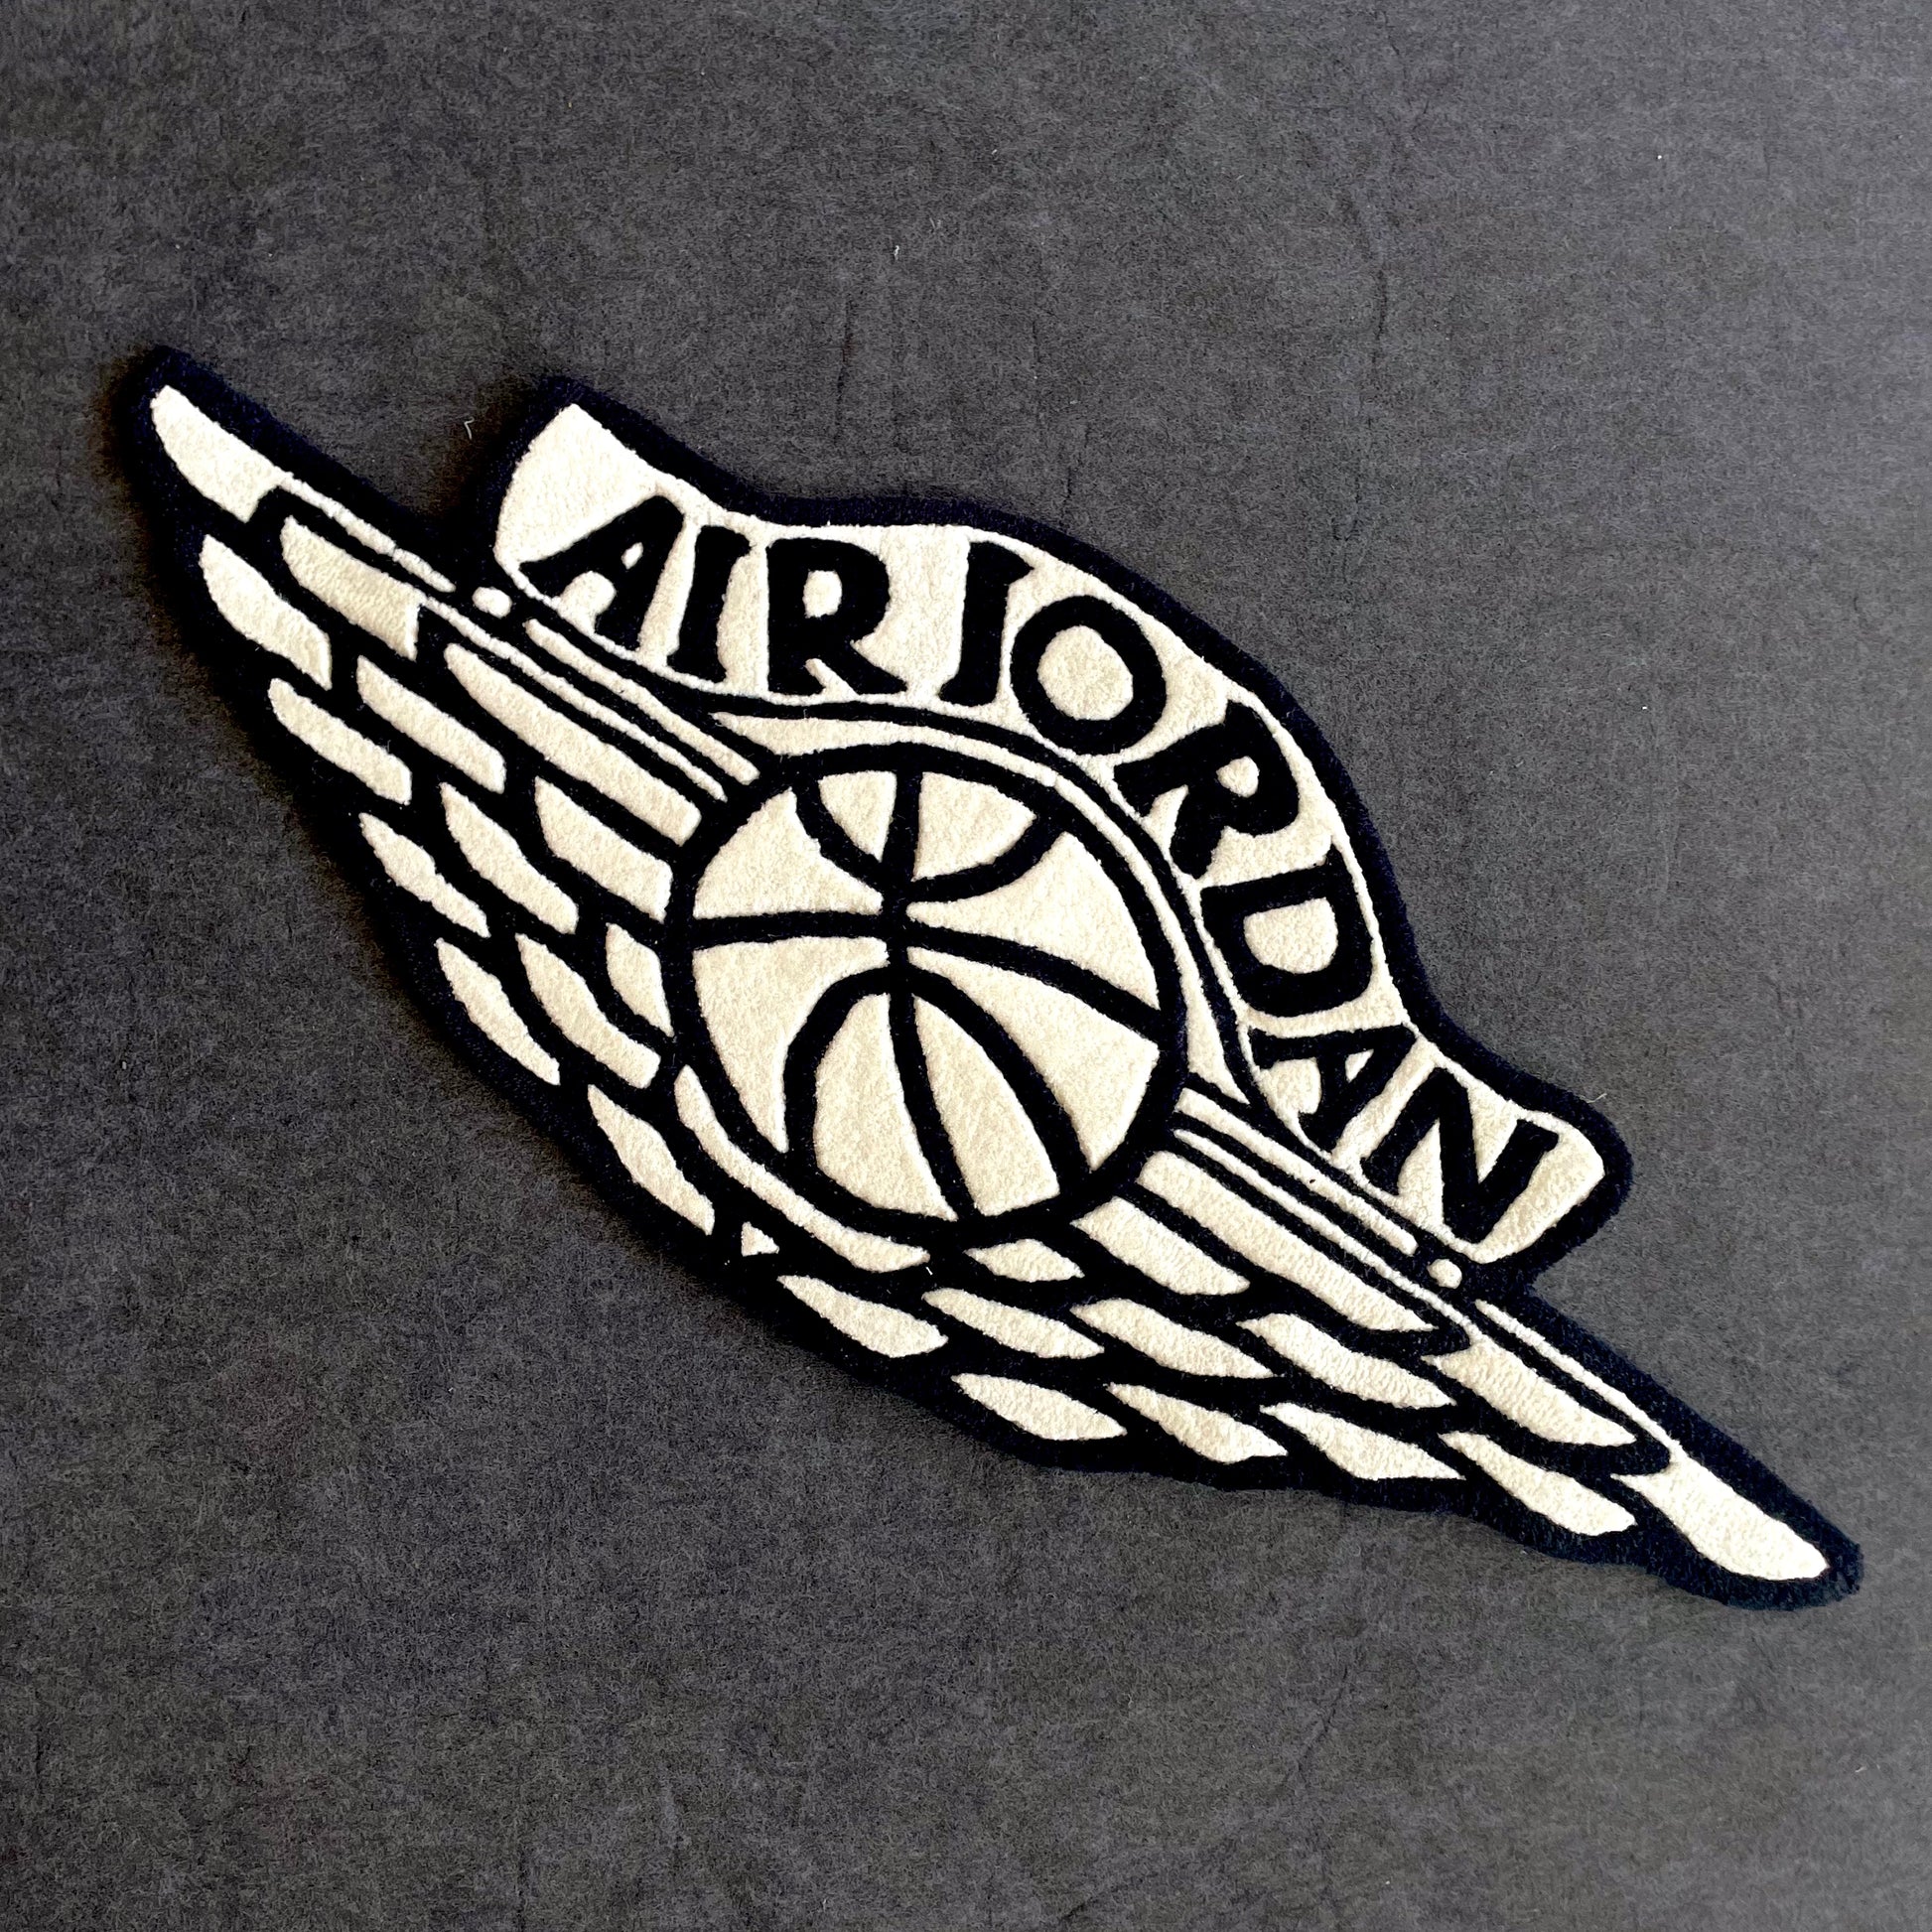 Air Jordan logo rug